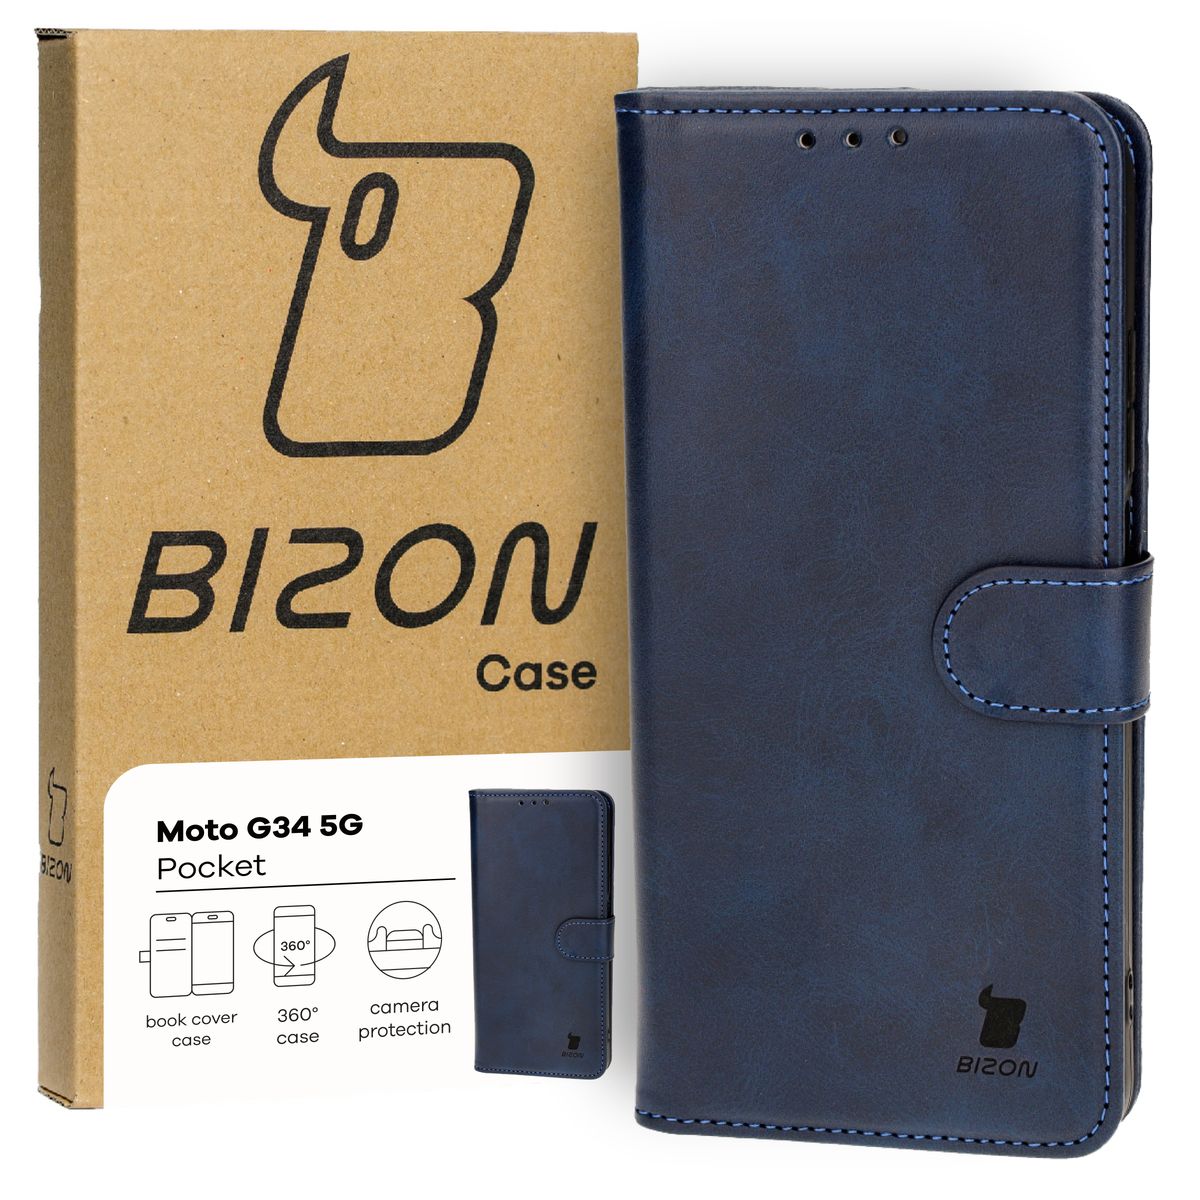 Schutzhülle für Motorola Moto G34 5G, Bizon Case Pocket, Dunkelblau